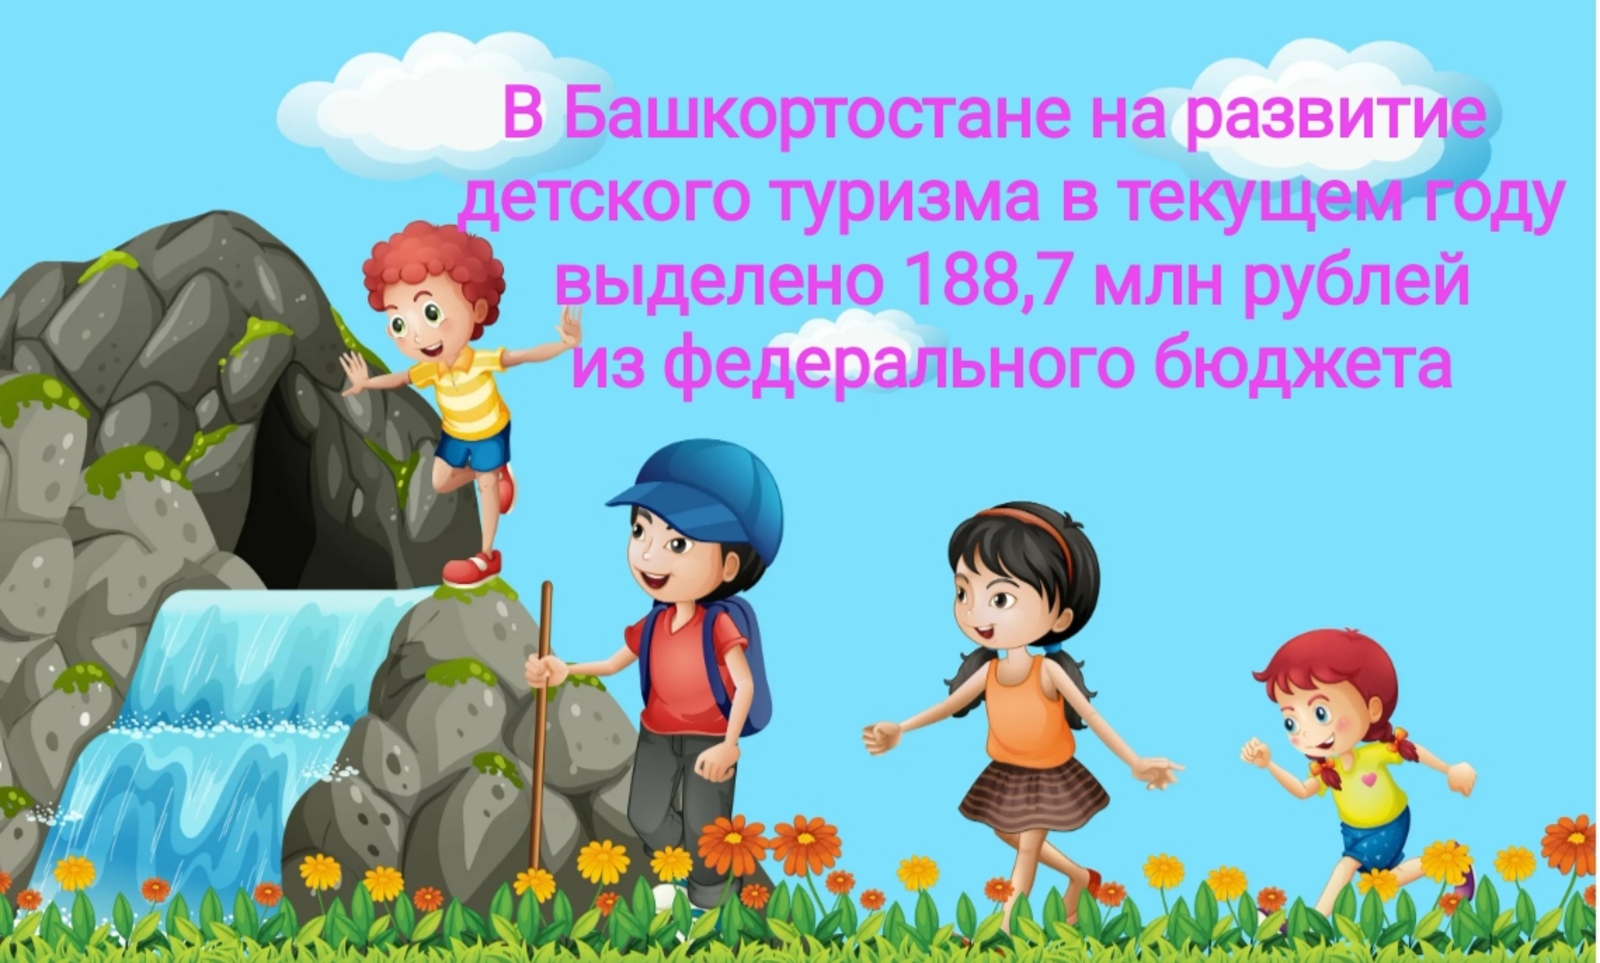 В Башкортостане на развитие детского туризма в текущем году выделено 188,7 млн рублей из федерального бюджета